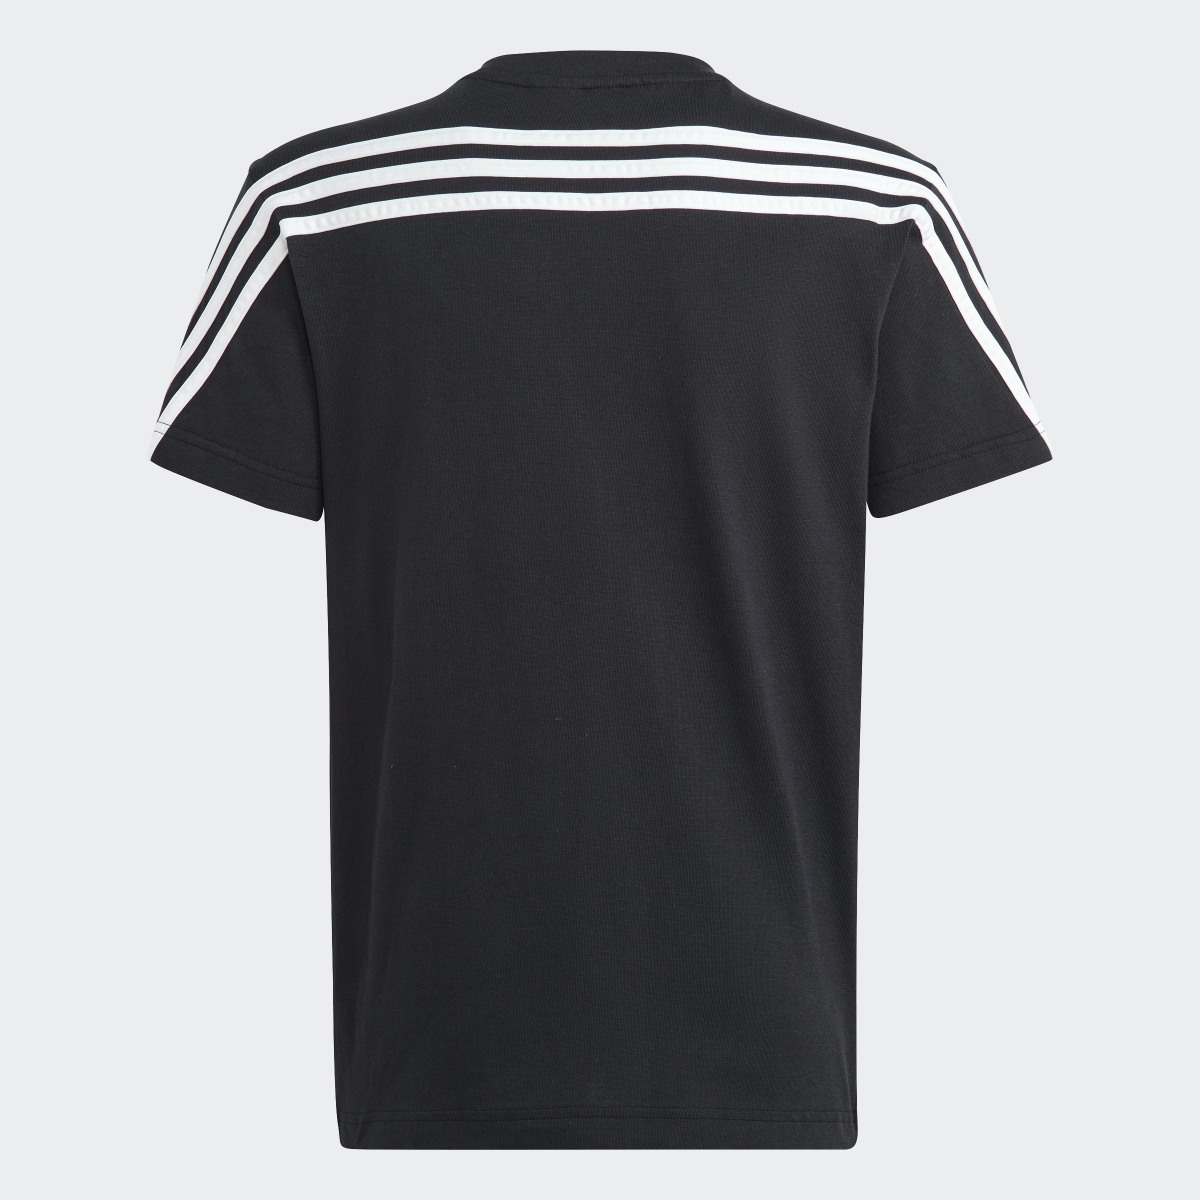 Adidas Future Icons 3-Stripes Tişört. 4